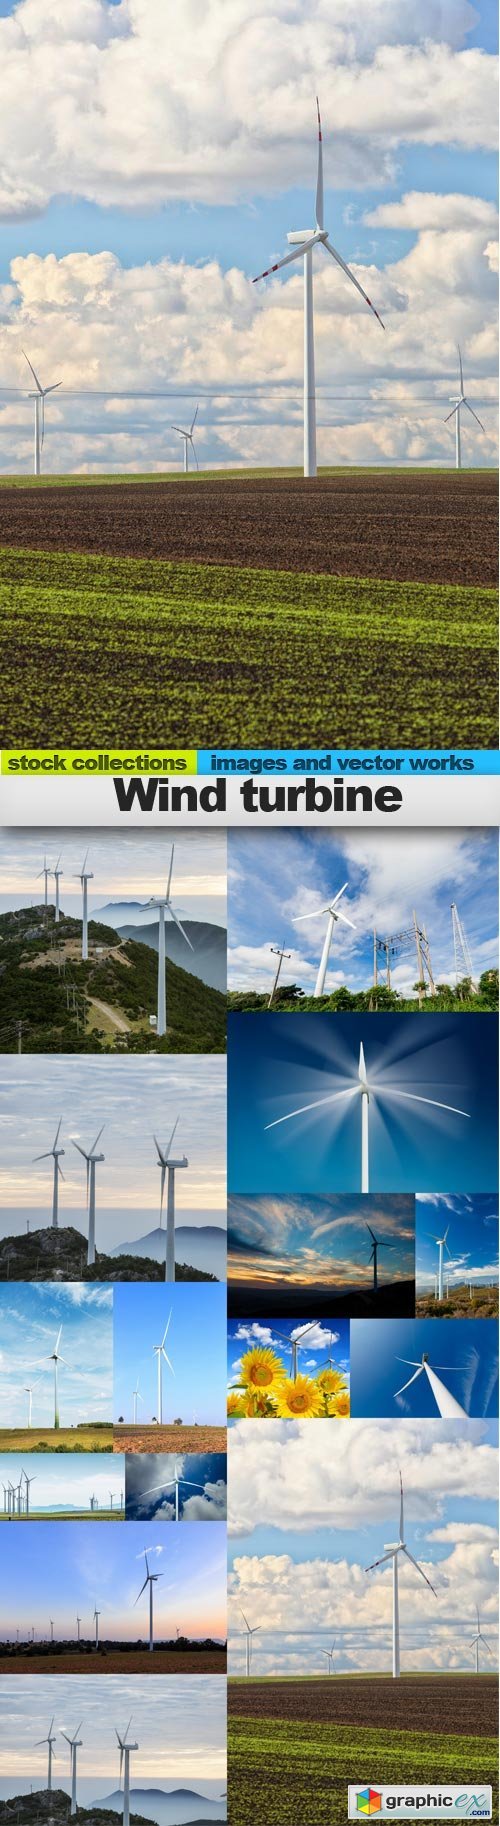 Wind turbine, 15 x UHQ JPEG